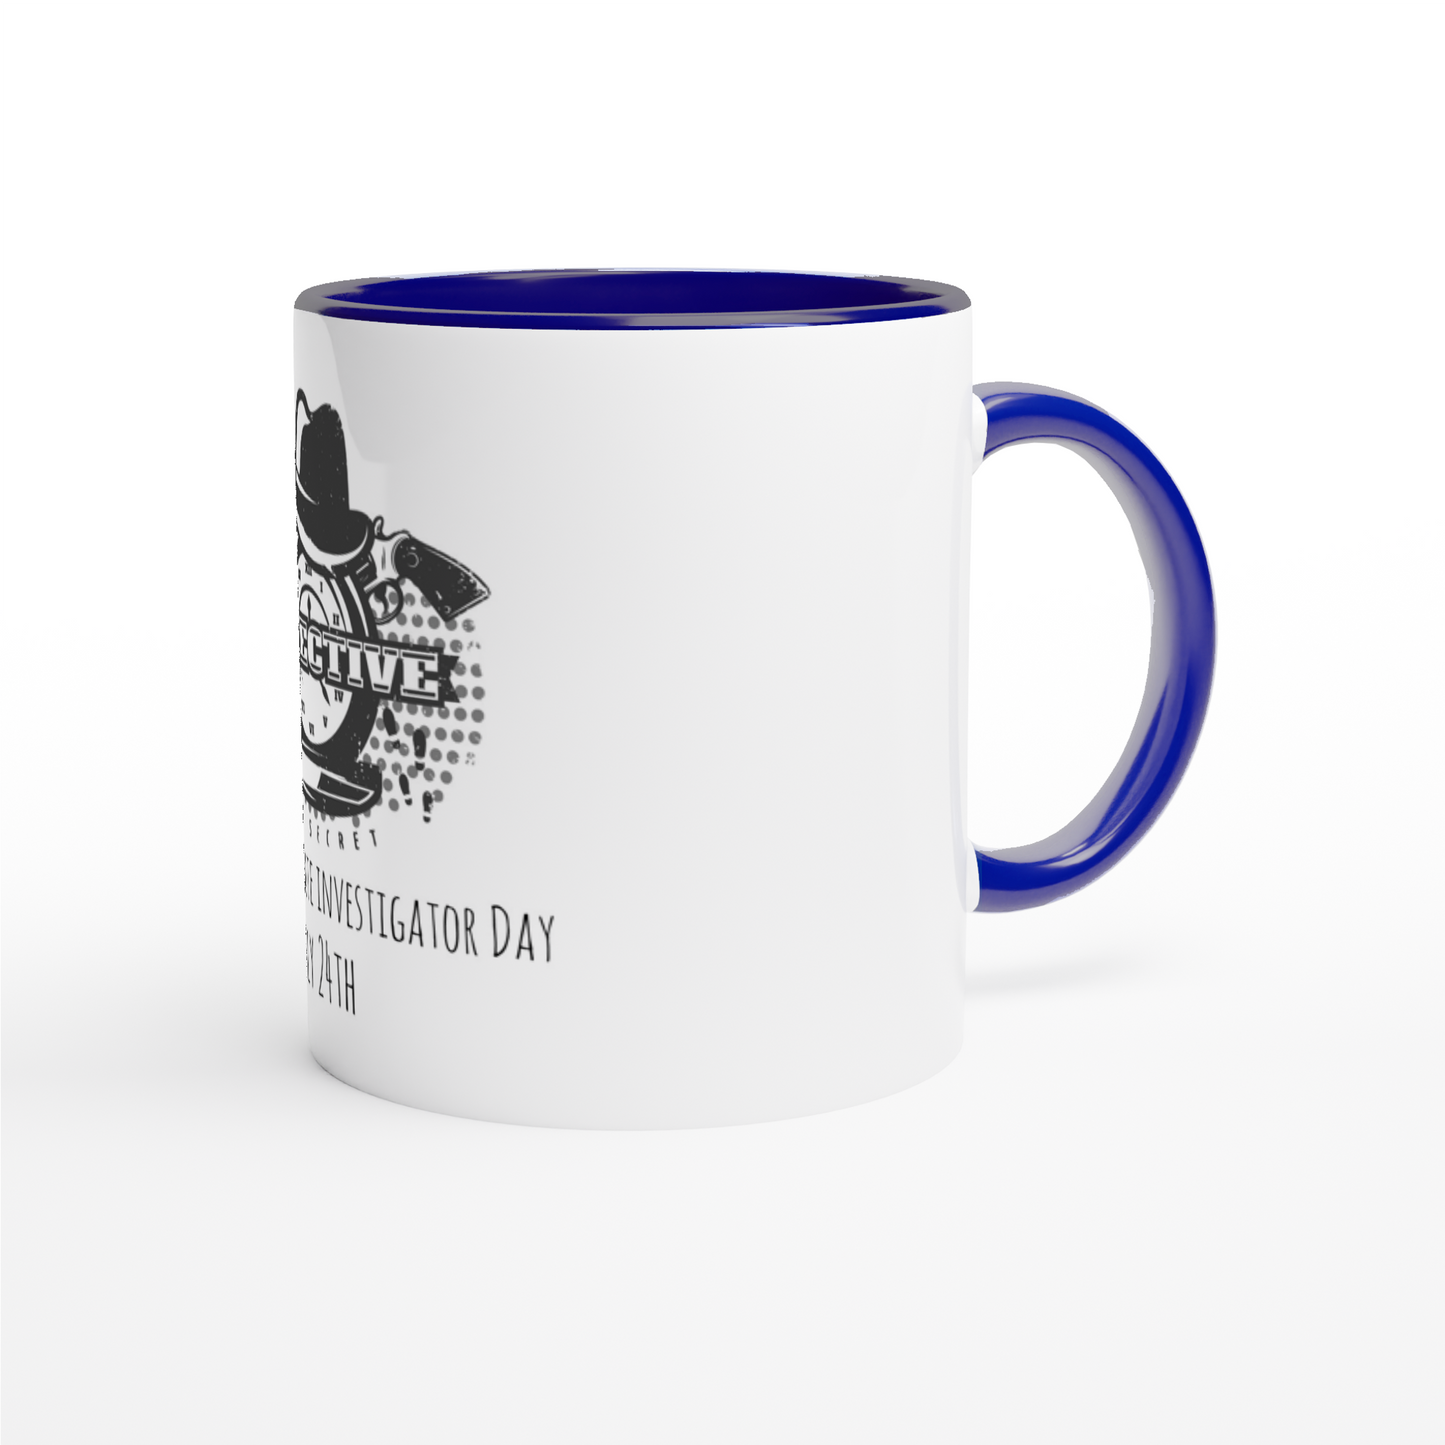 White 11oz Ceramic Mug with Color Inside - National PI Day